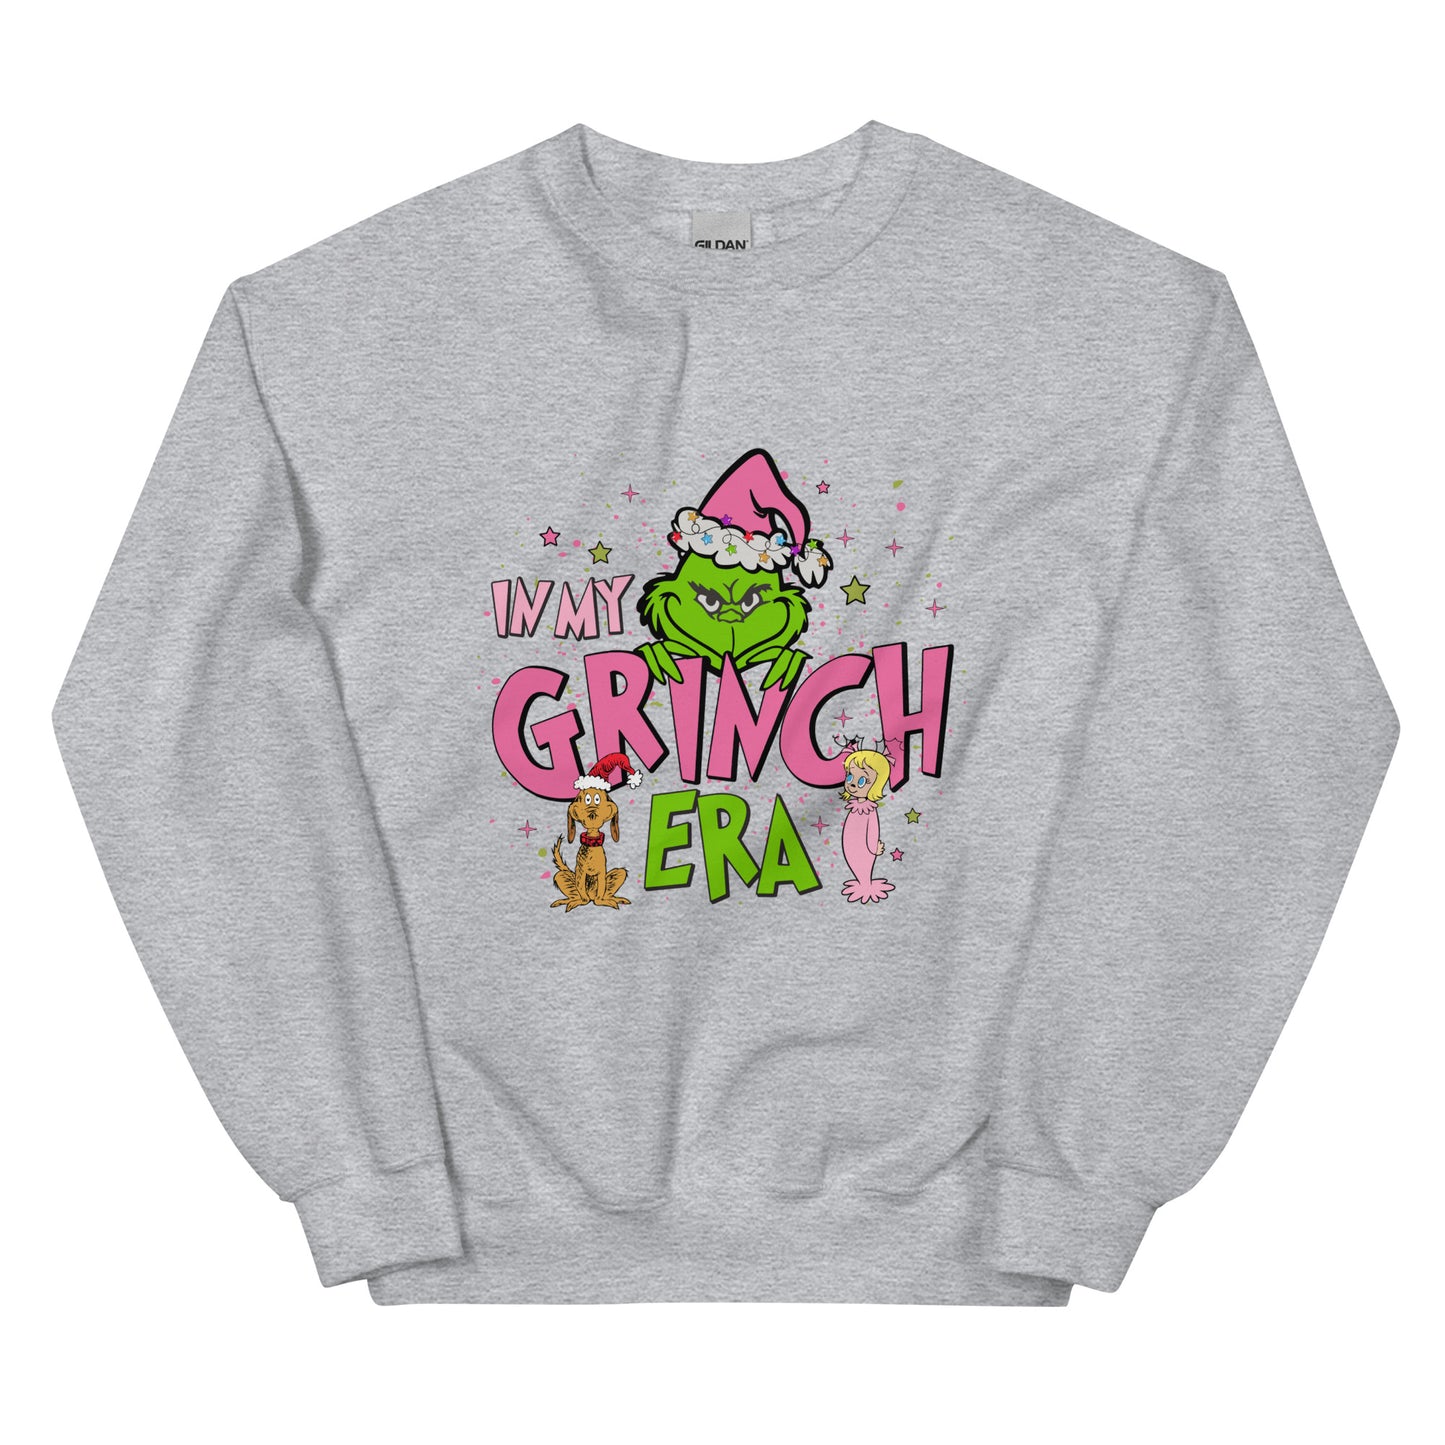 Grinch Christmas Sweatshirt